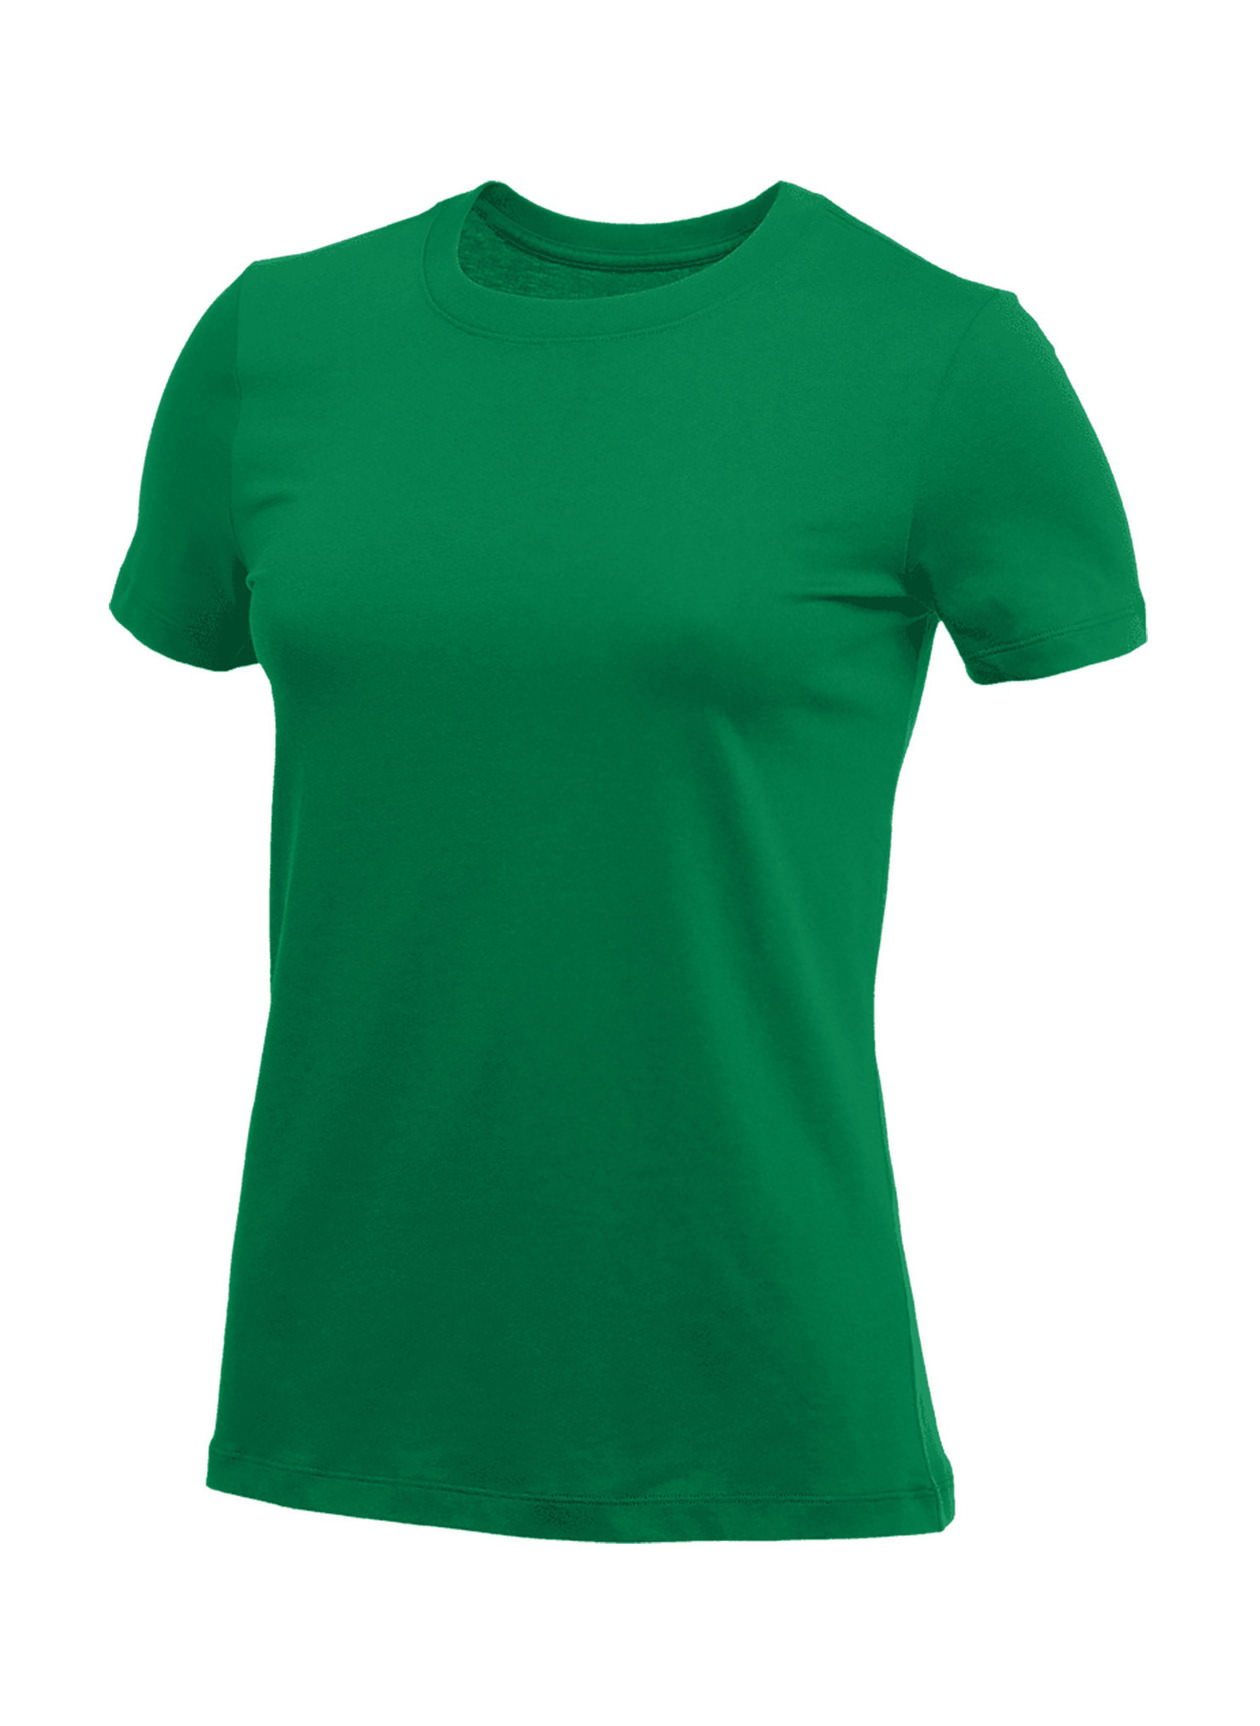 Nike Women's Apple Green T-Shirt